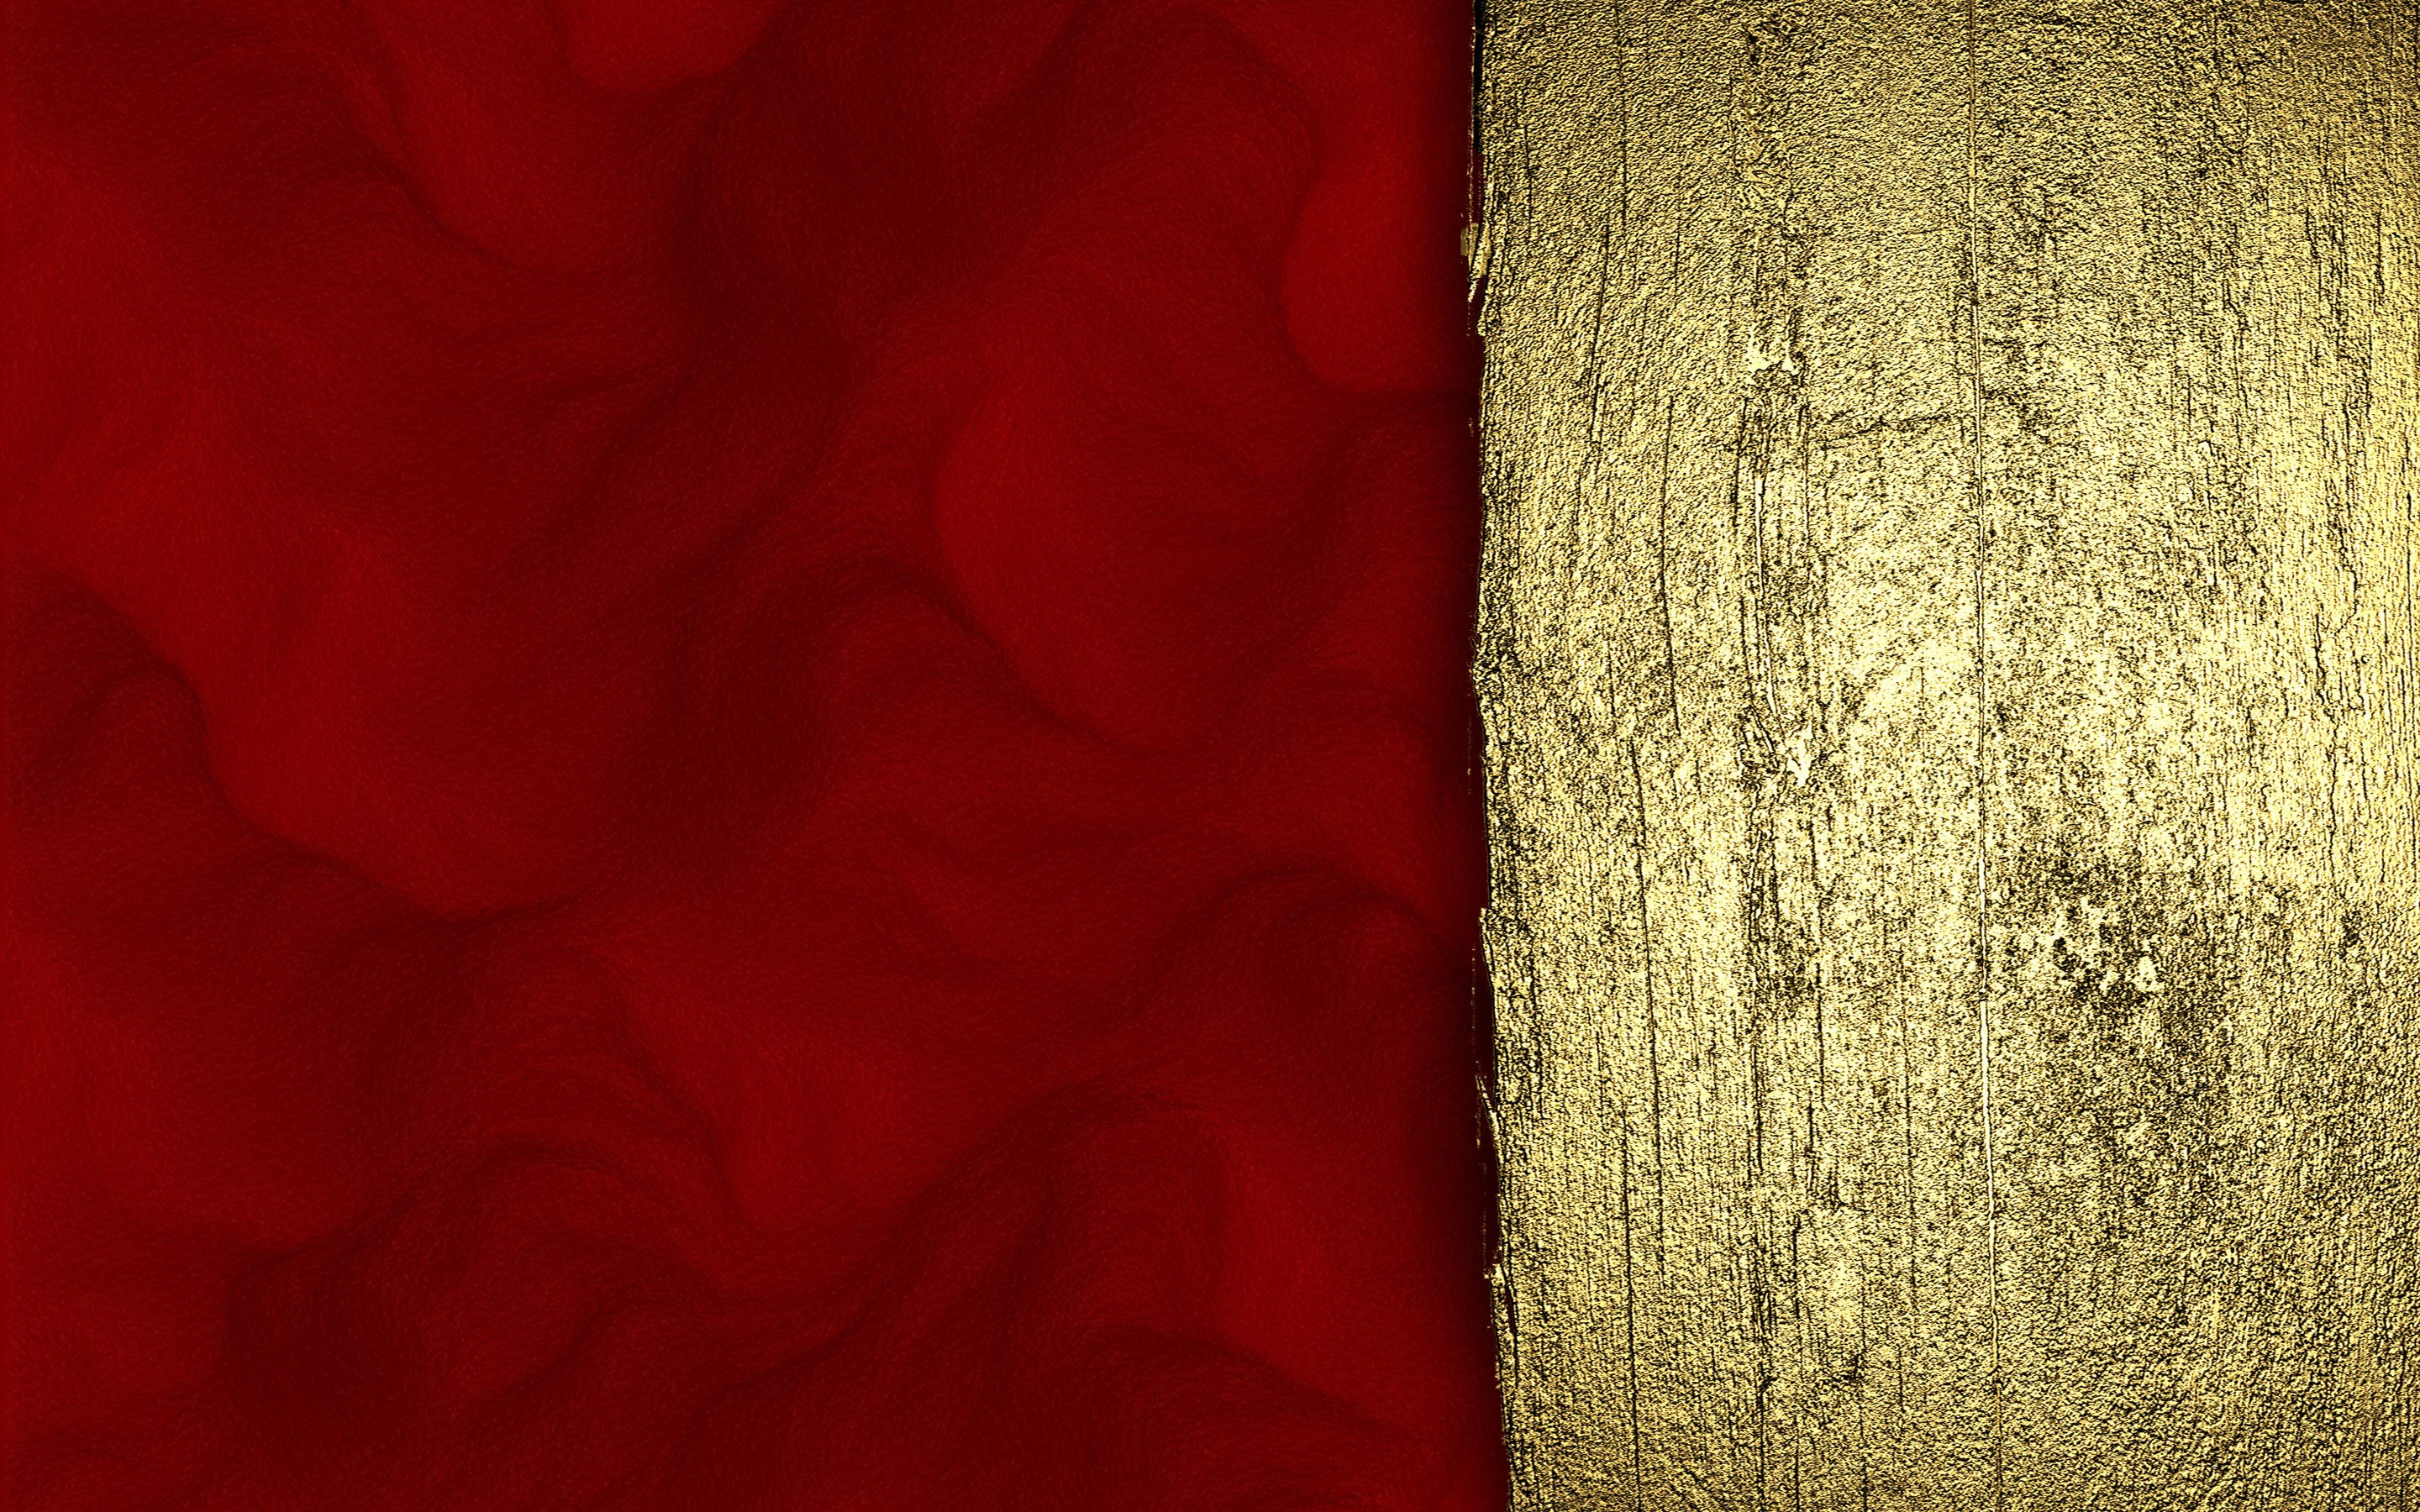 núcleos de papel tapiz,rojo,madera,pared,árbol,tintes y sombras